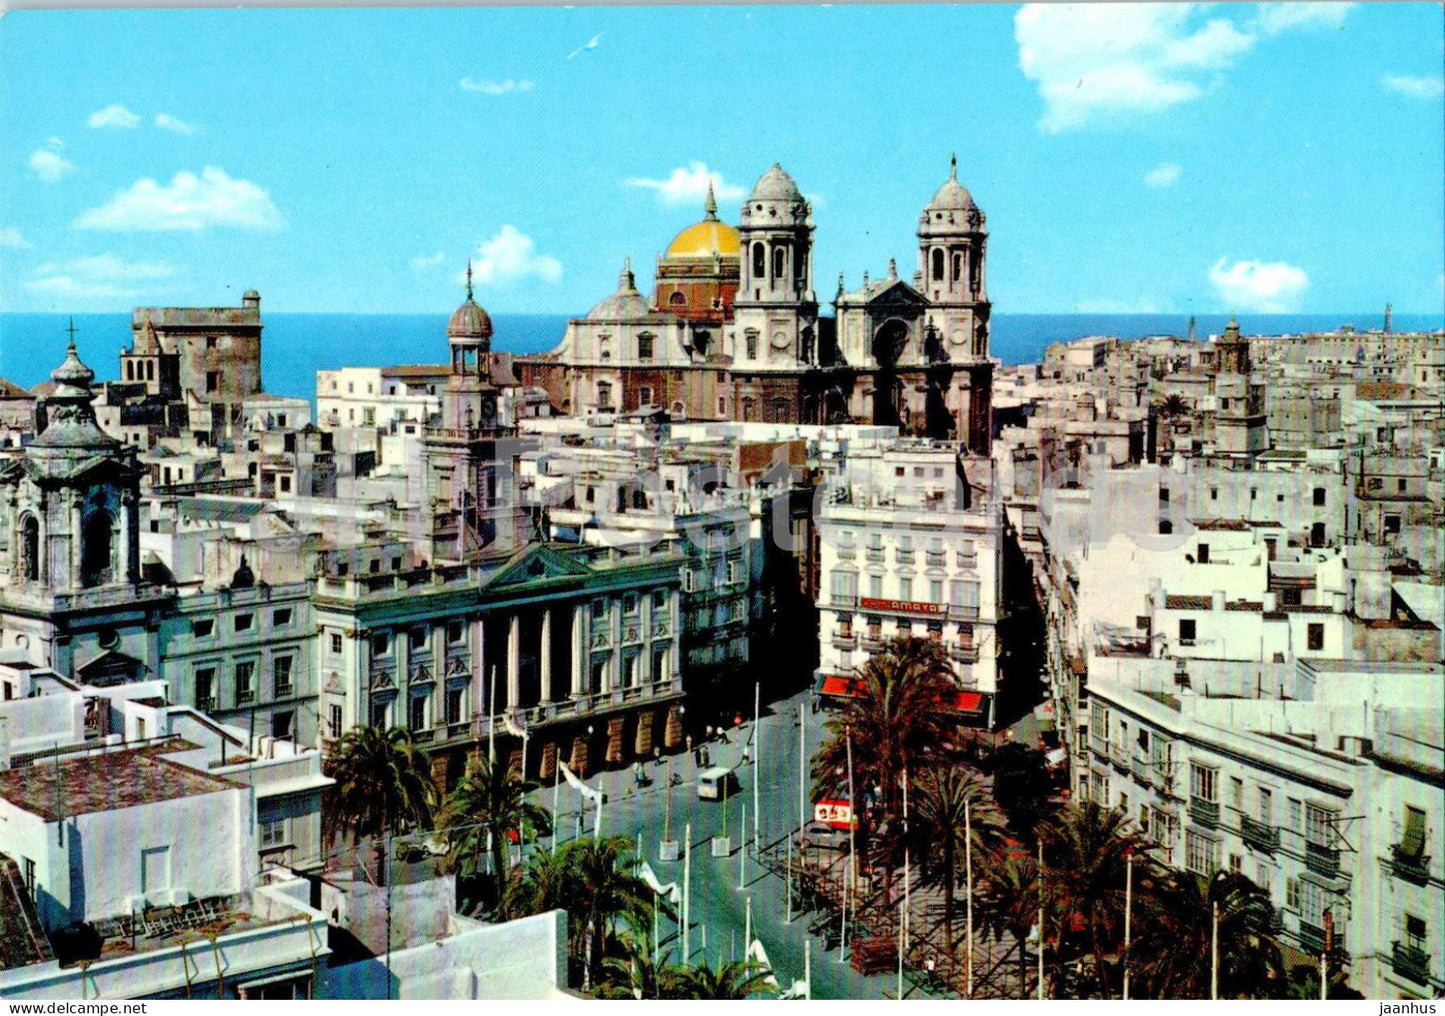 Cadiz - Plaza San Juan de Dios - Ayuntamiento y Catedral - square - 523 - Spain - used - JH Postcards